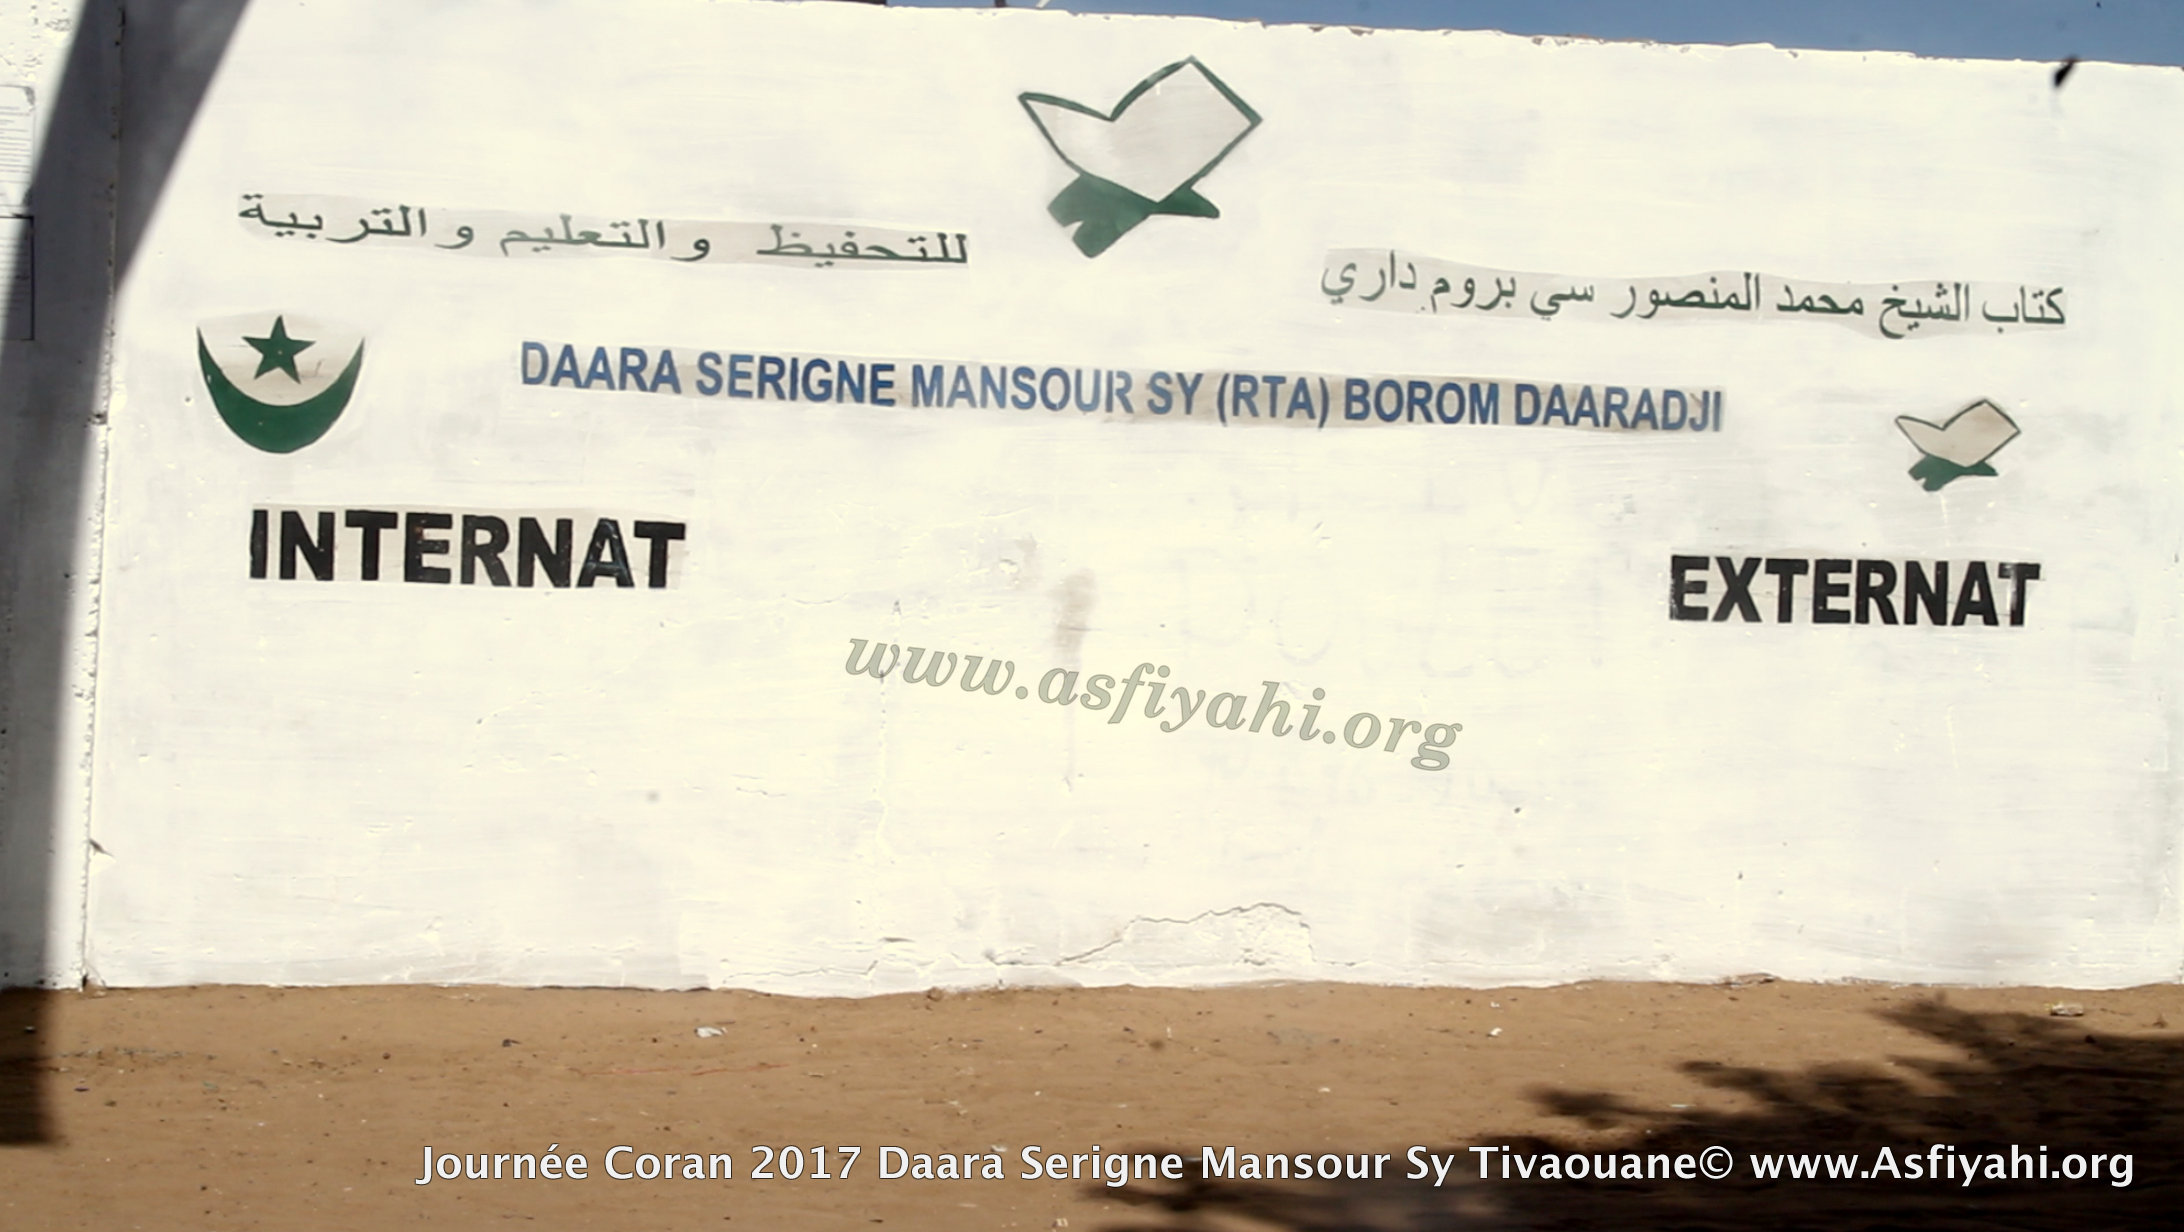  PHOTOS - 21 JANVIER 2017 À TIVAOUANE - Les images de la journée du Saint Coran du Daara Serigne Mansour Sy, dirigée par El hadj Maodo Malick  Sow